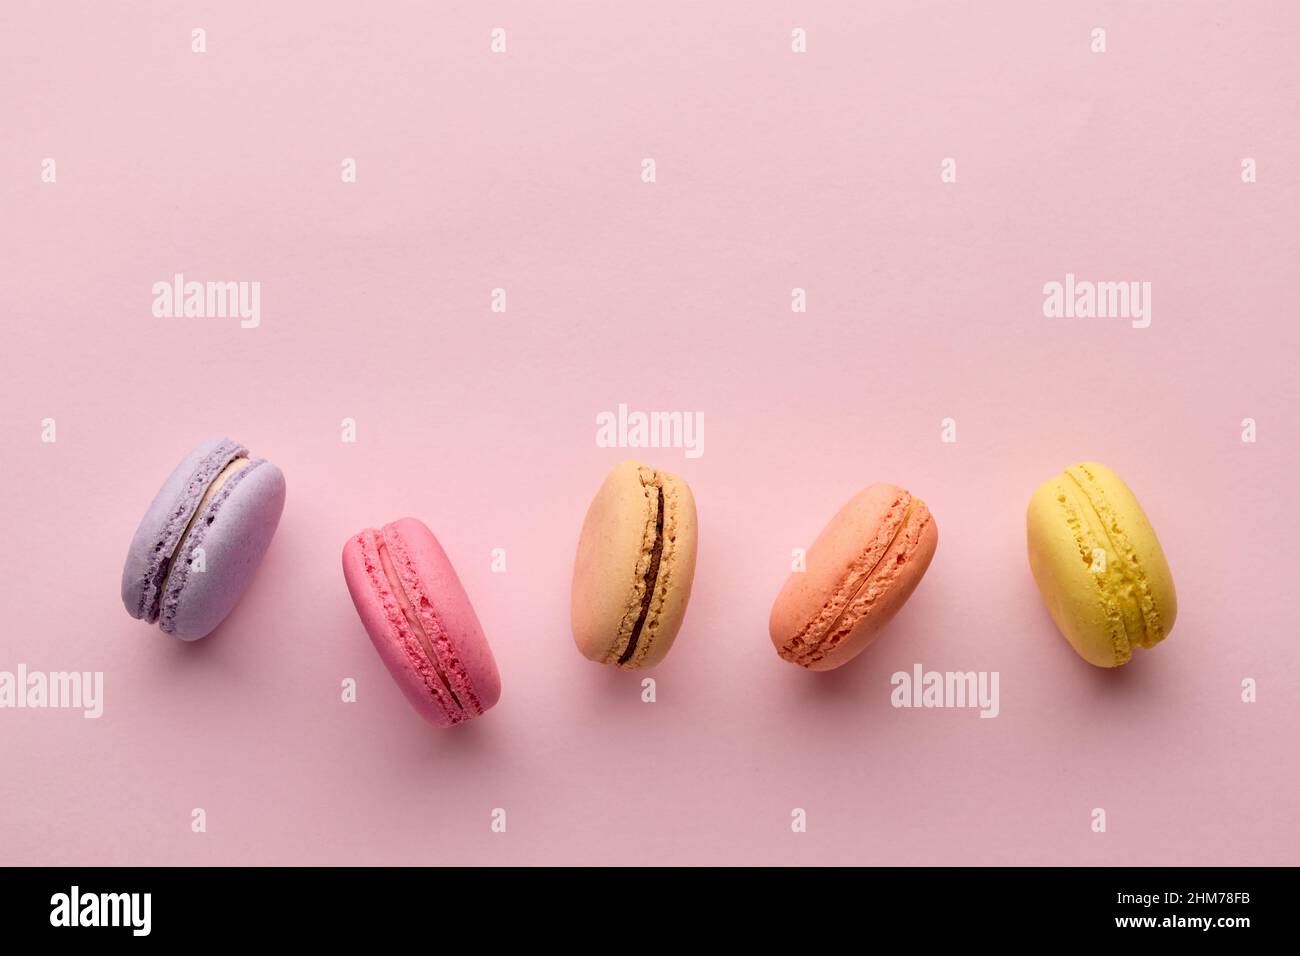 Délicieux dessert français coloré macaron ou macarons dans une rangée sur fond rose. Vue de dessus avec espace de copie. Banque D'Images